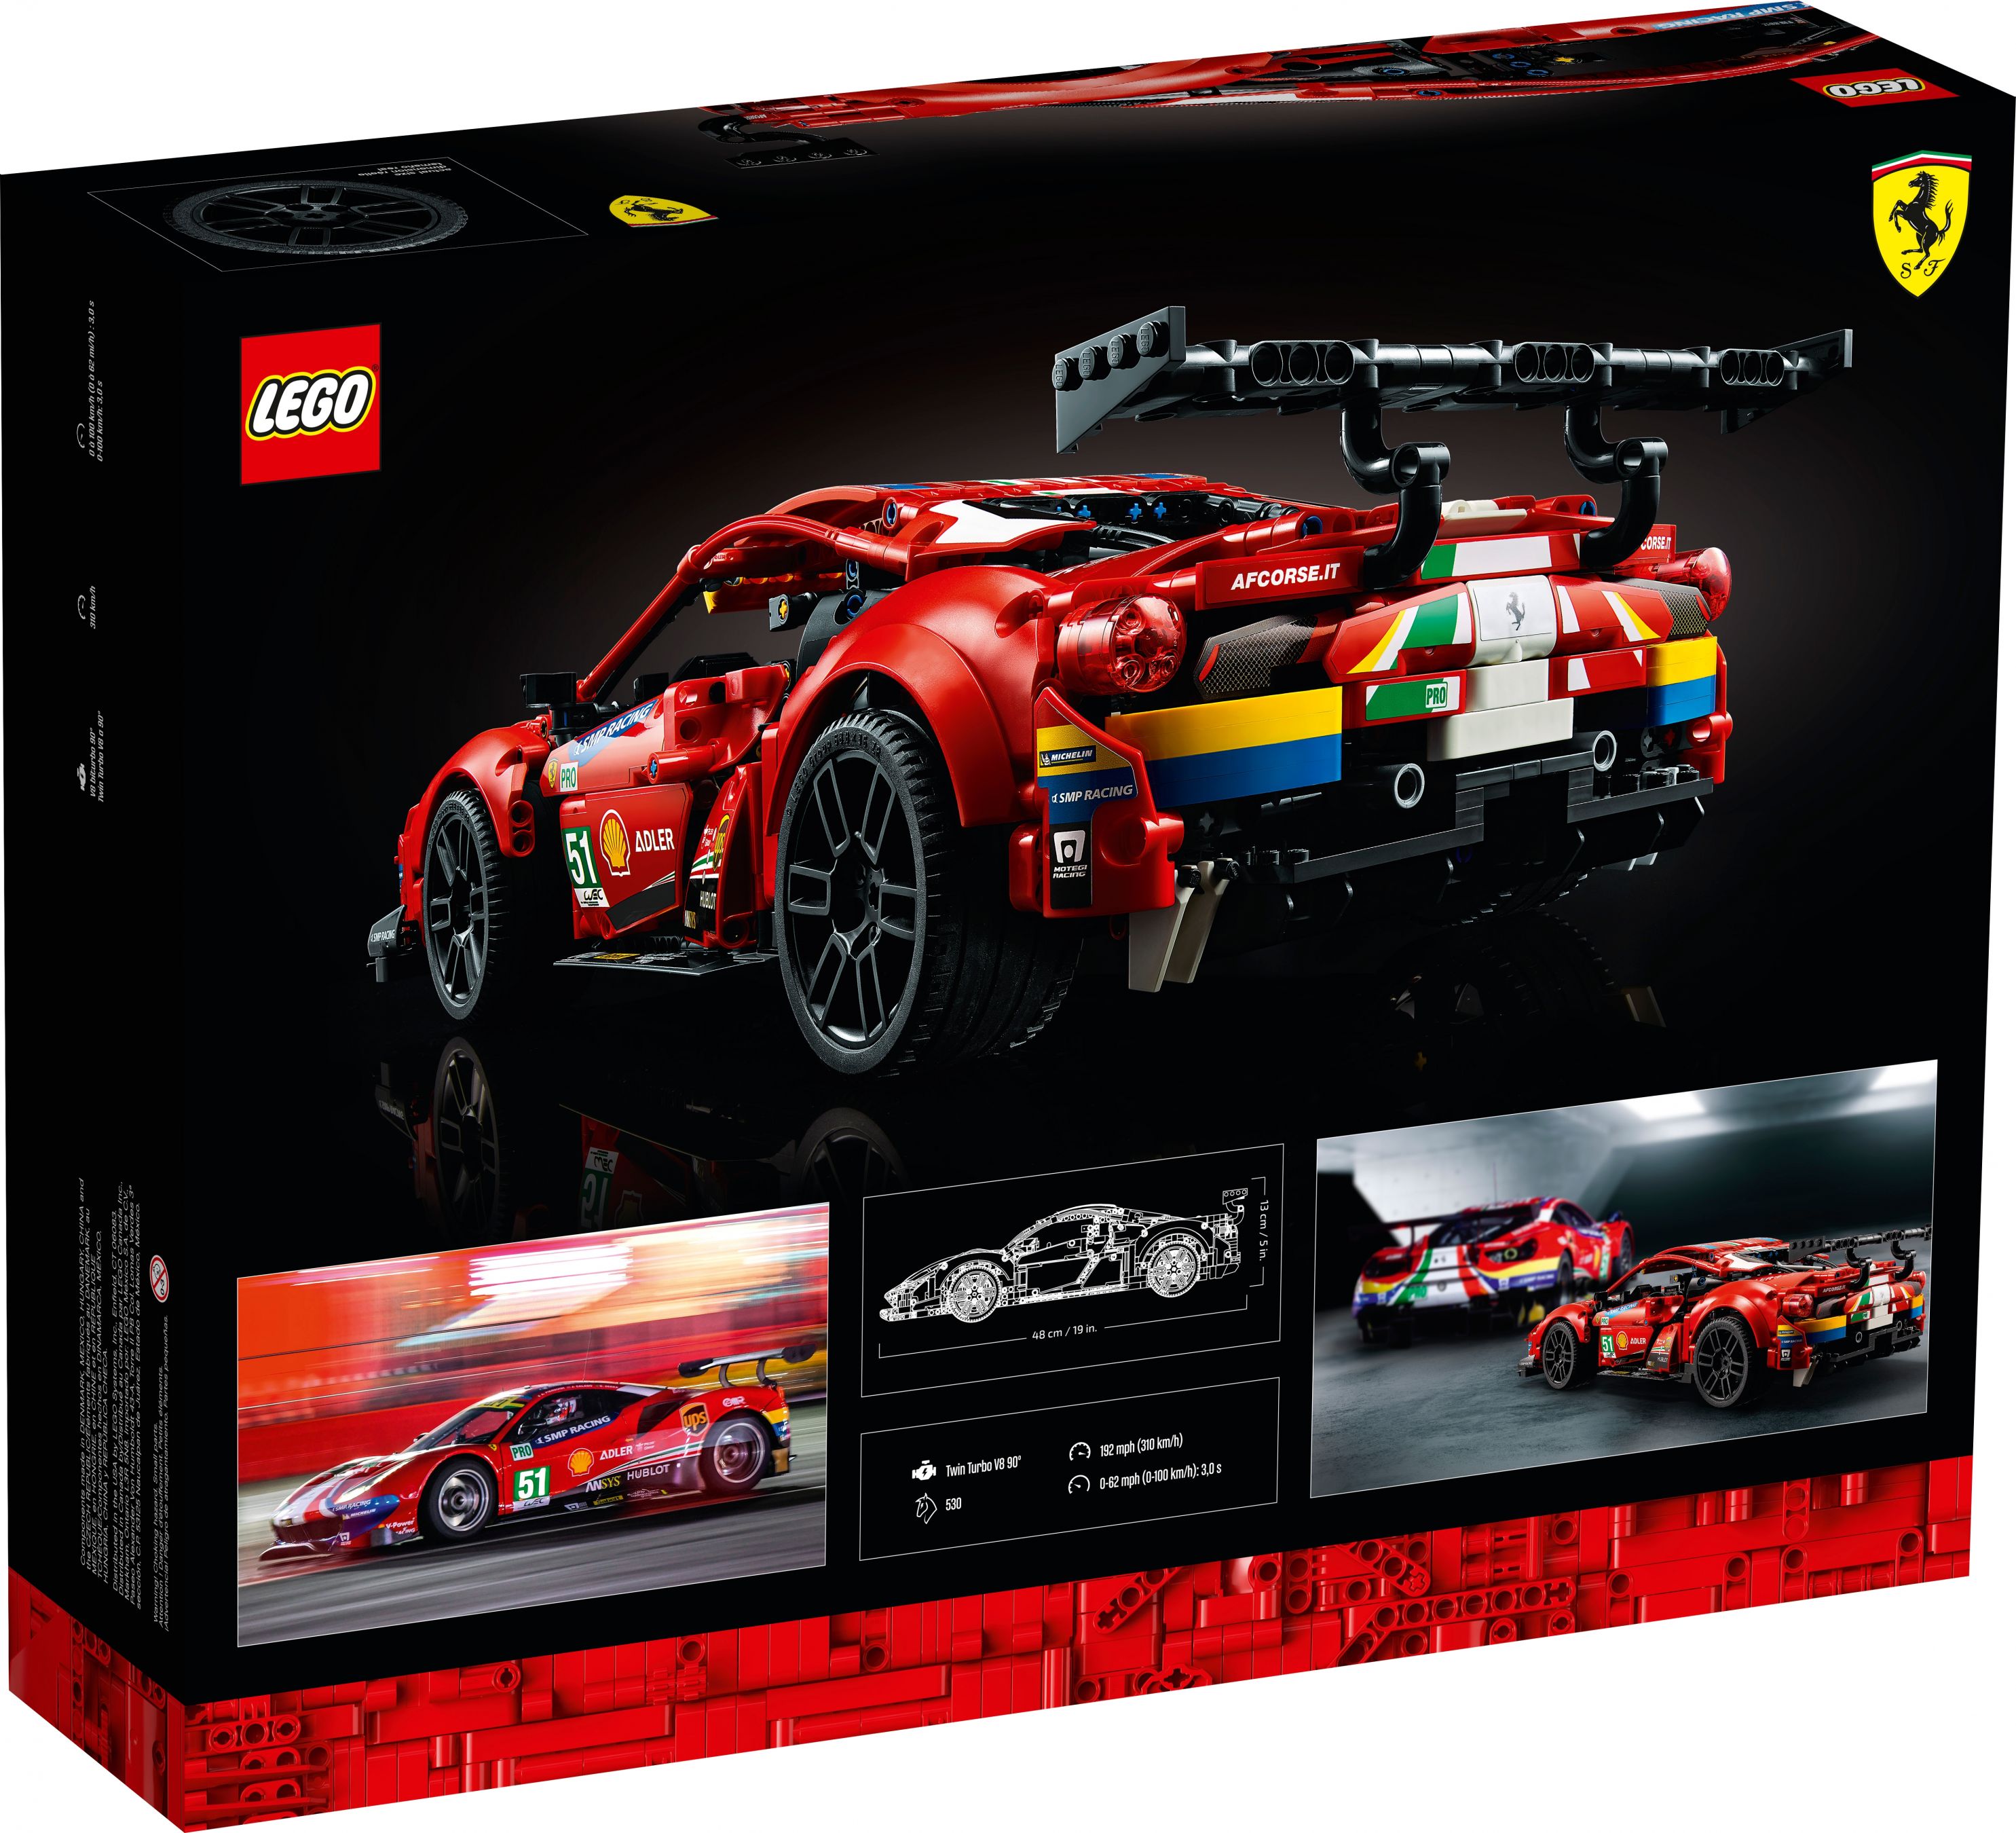 LEGO Technic 42125 Ferrari 488 GTE “AF Corse #51” LEGO_42125_box5_v39.jpg